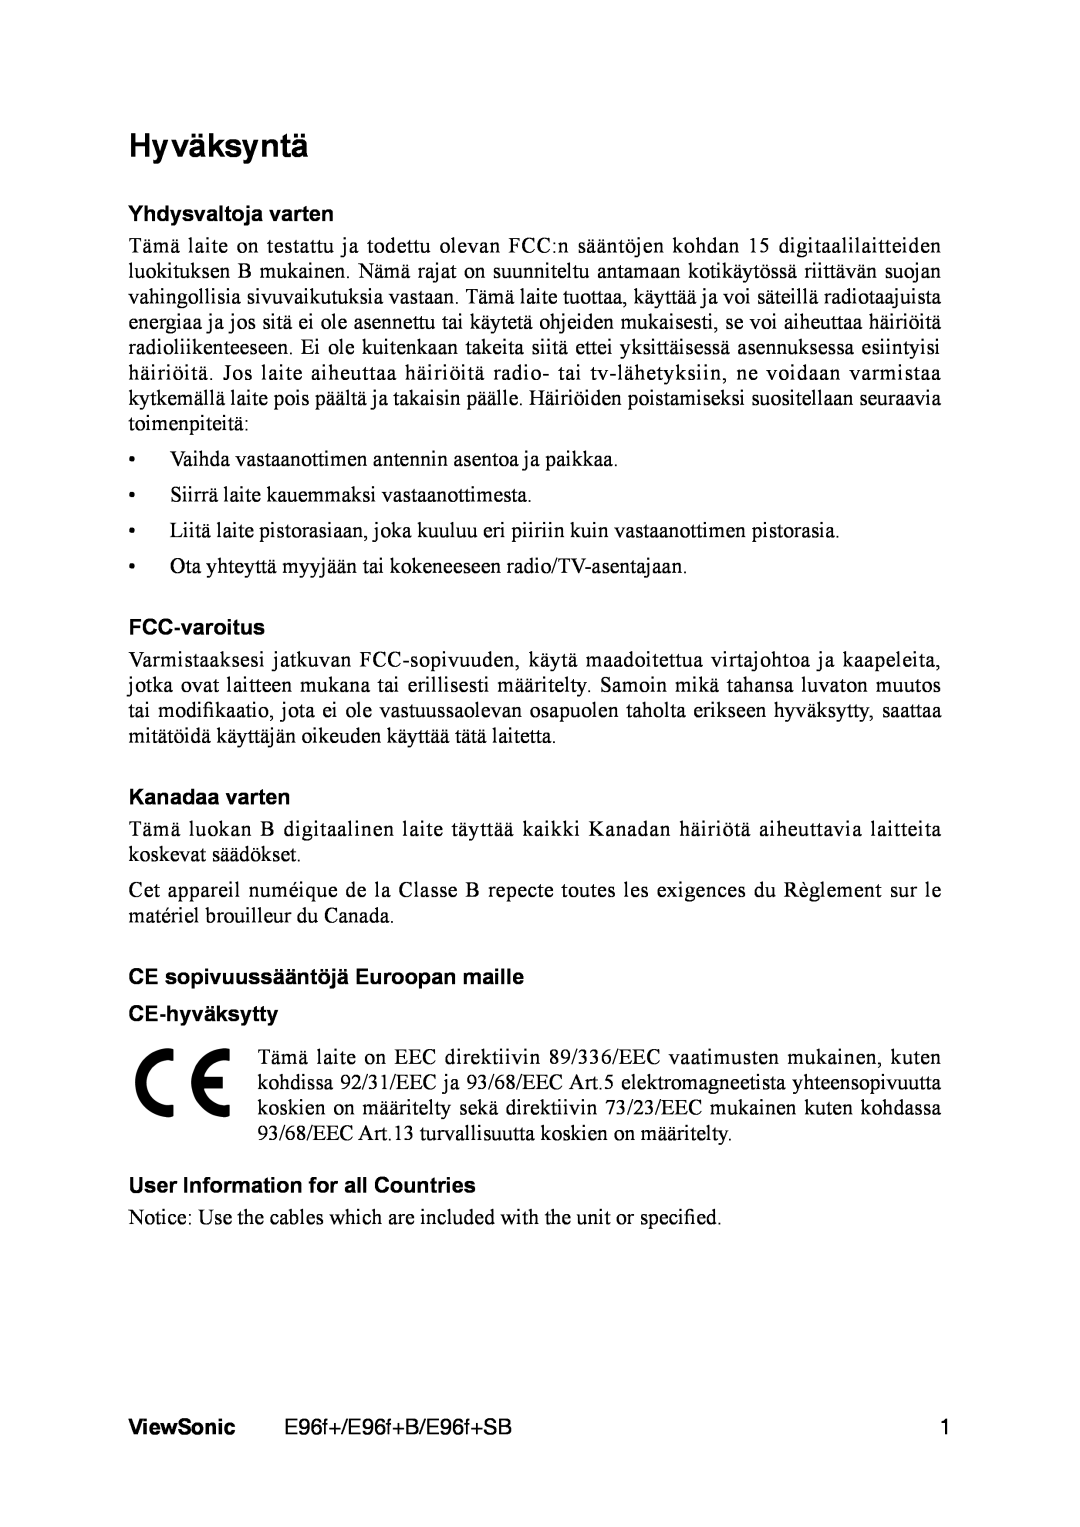 ViewSonic E96f+ manual Hyväksyntä, Yhdysvaltoja varten, FCC-varoitus, Kanadaa varten, User Information for all Countries 